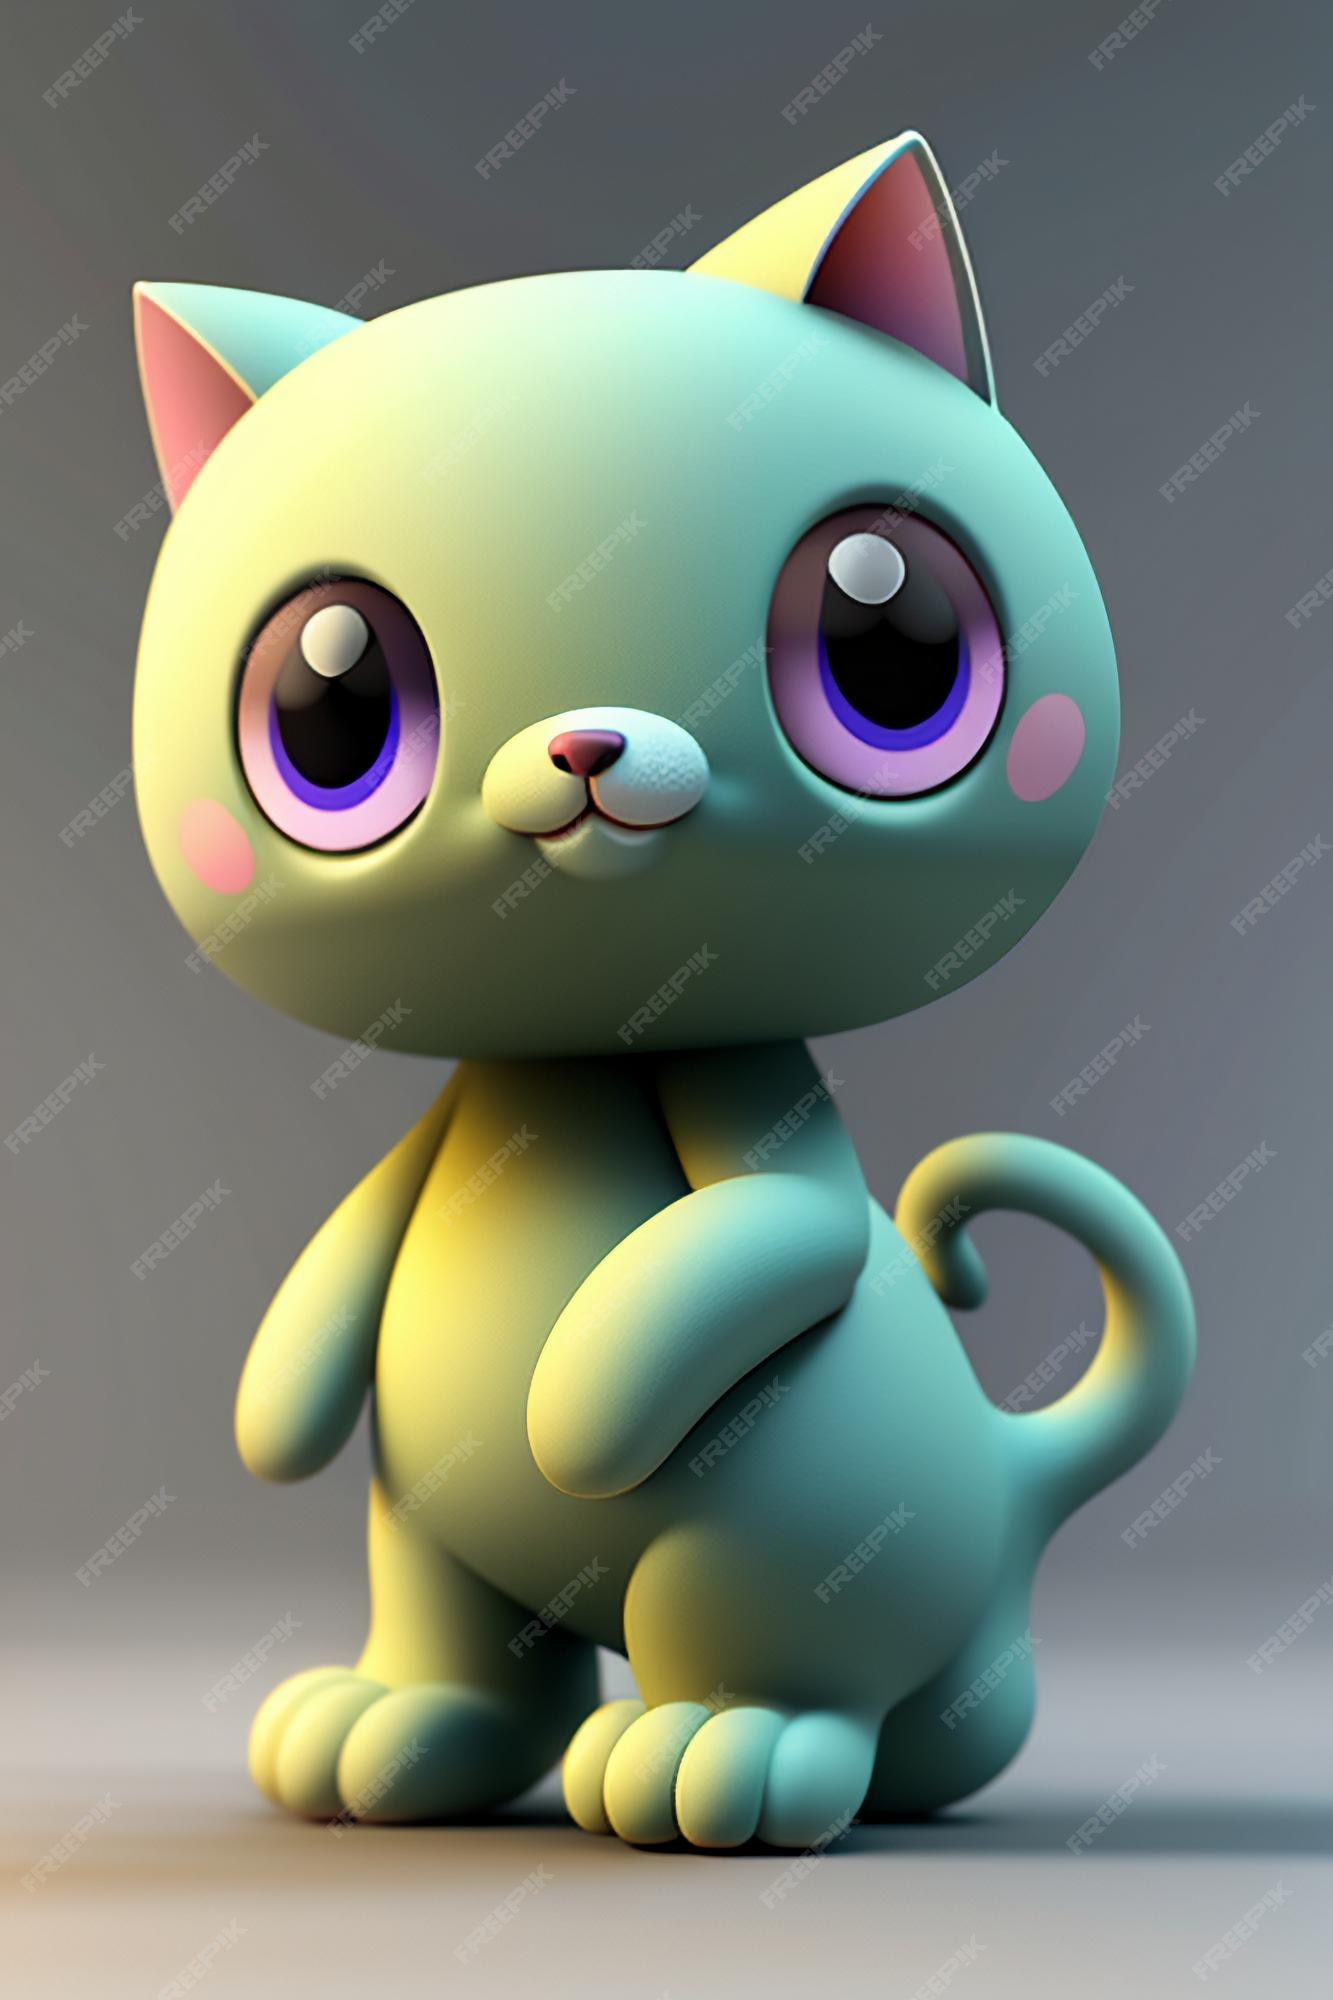 Desenho animado estilo anime kawaii gato fofo modelo de personagem  renderização 3d design de produto jogo brinquedo ornamento